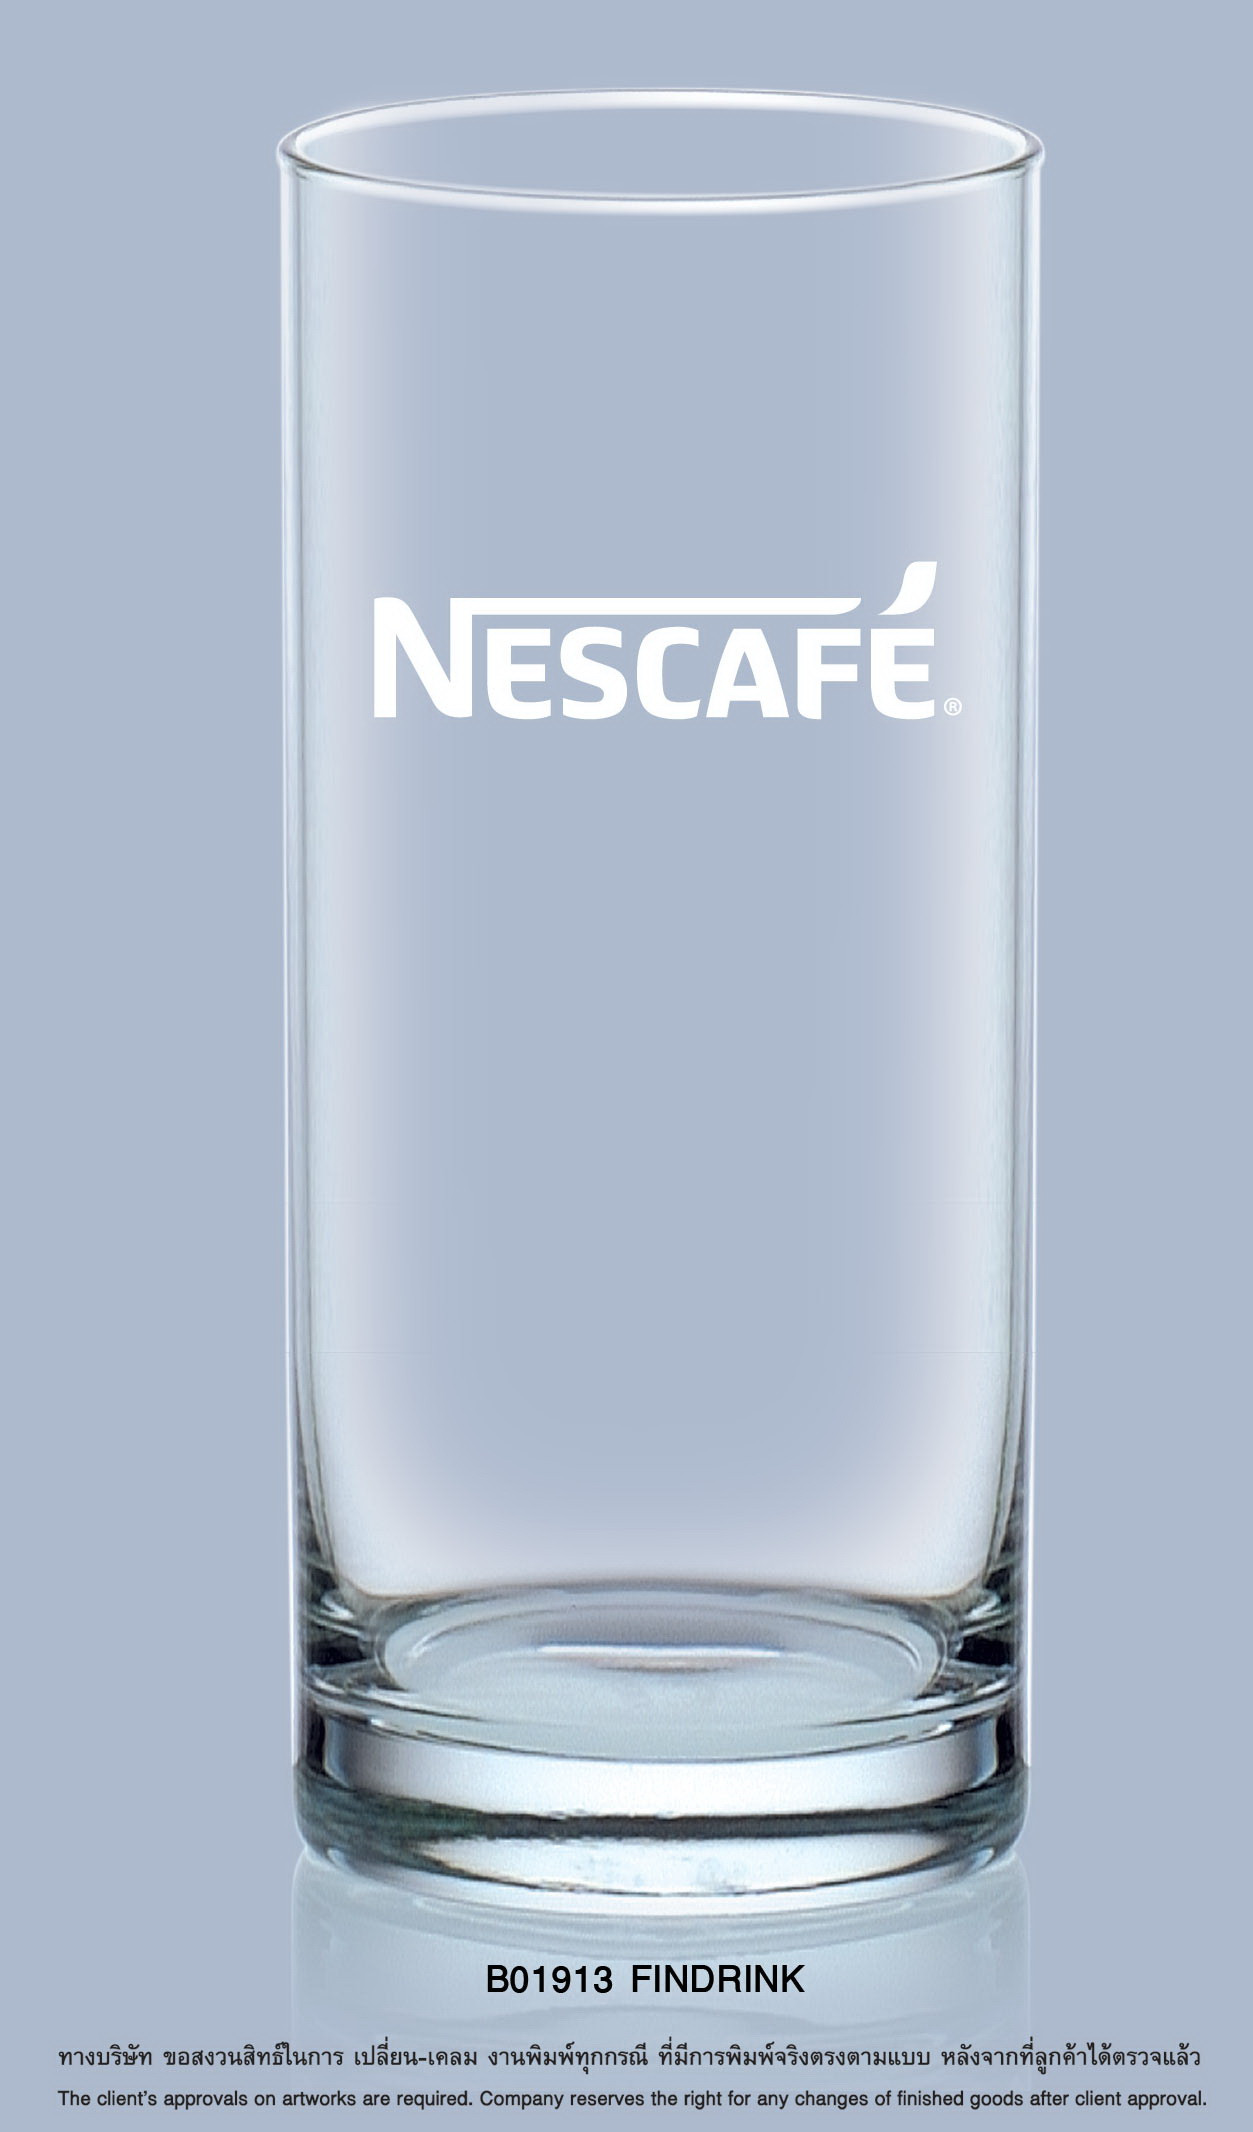 Nescafe B01913